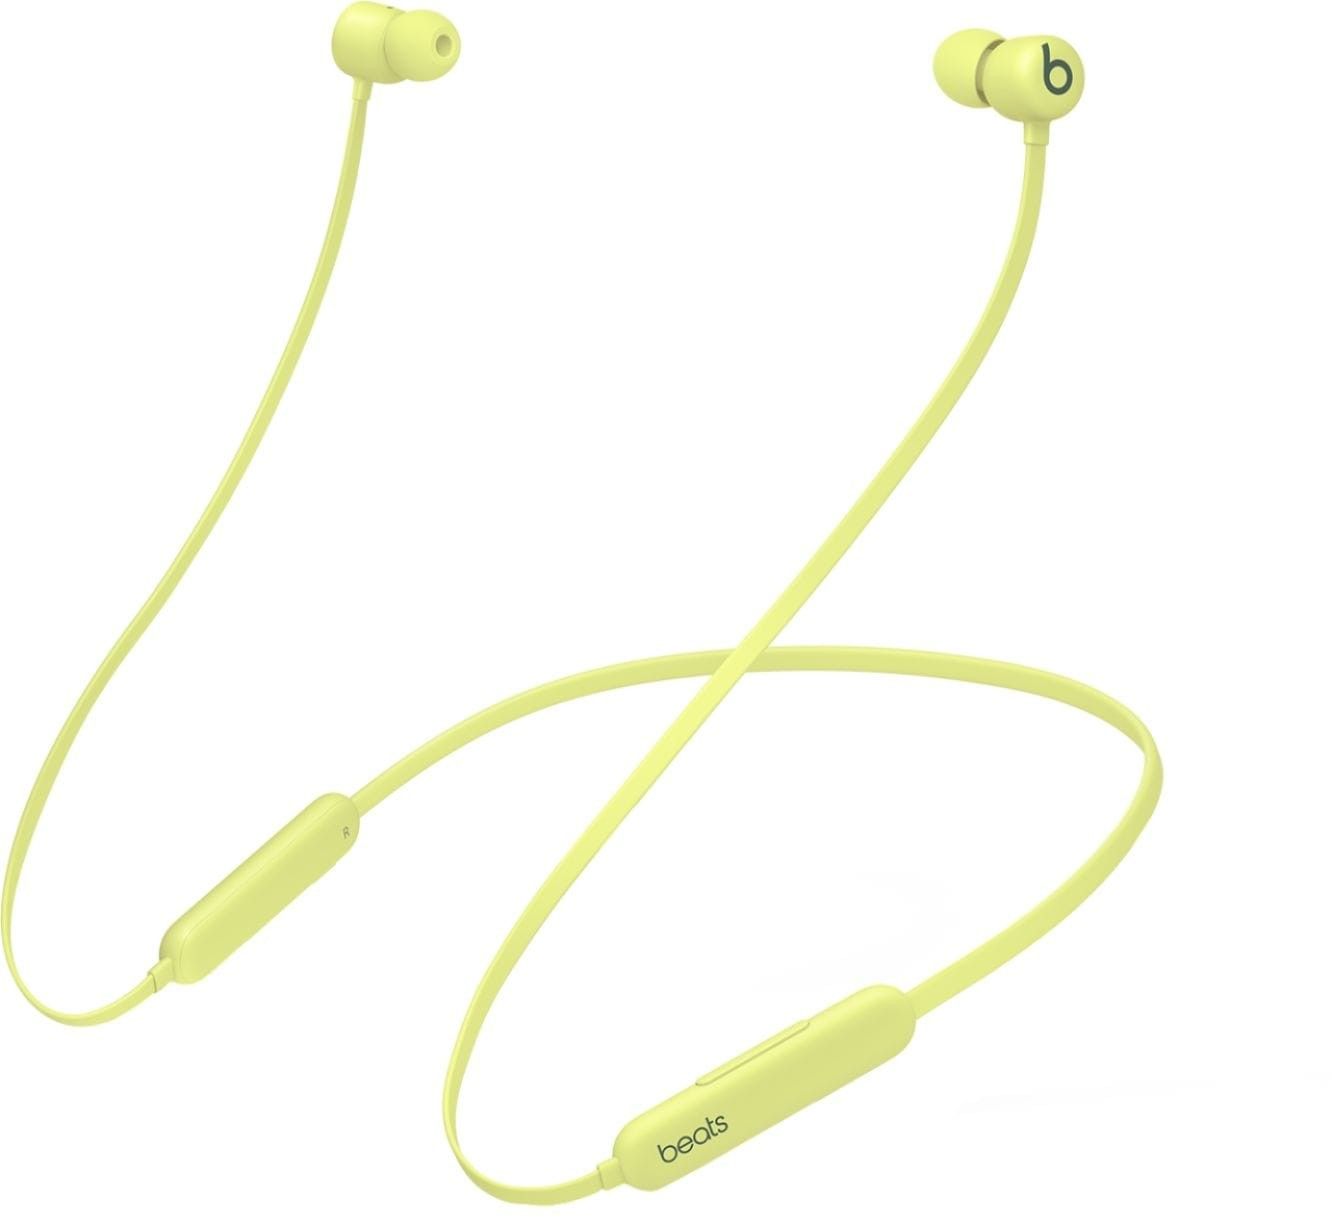 Beats by Dr. Dre Beats Flex Wireless Earphones Yuzu Yellow MYMD2LL/A - Best Buy | Best Buy U.S.